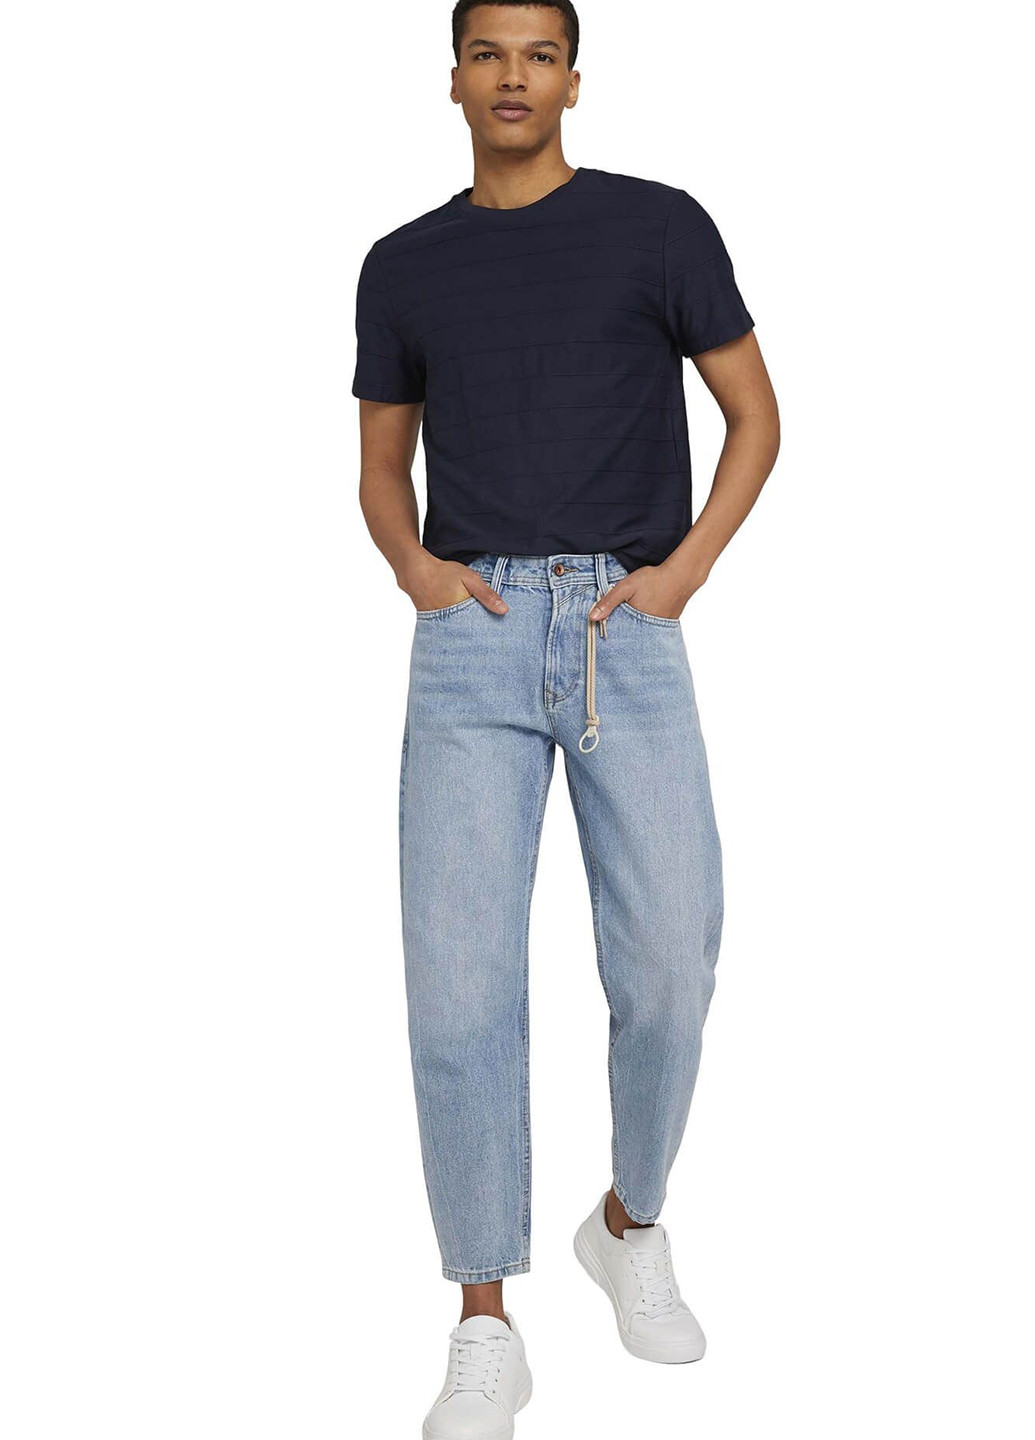 Голубые демисезонные баллоны, укороченные, зауженные джинсы Tom Tailor